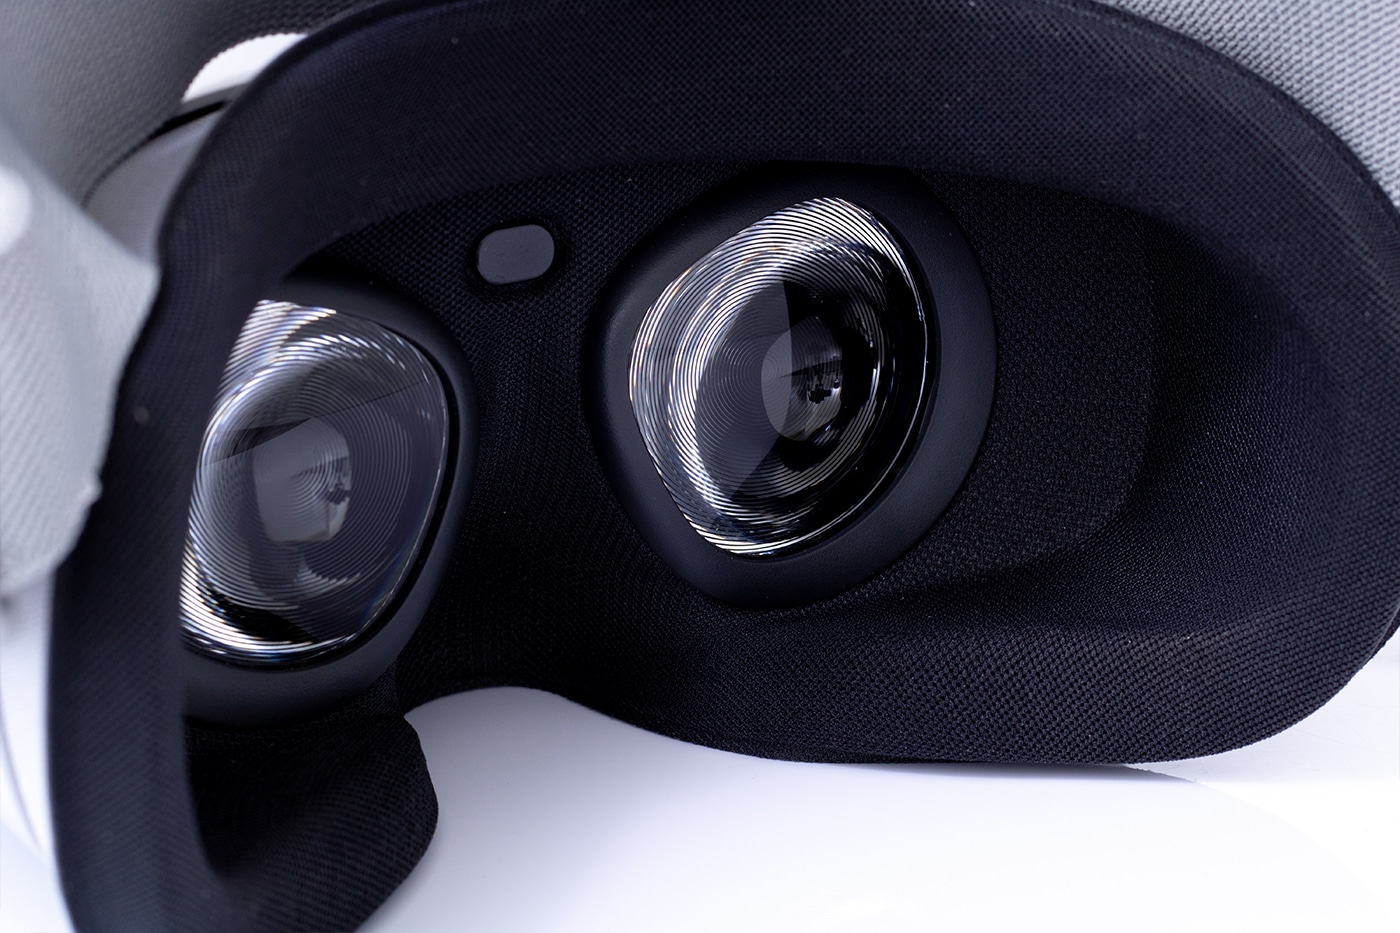 Oculus Go Inside View of lenses.